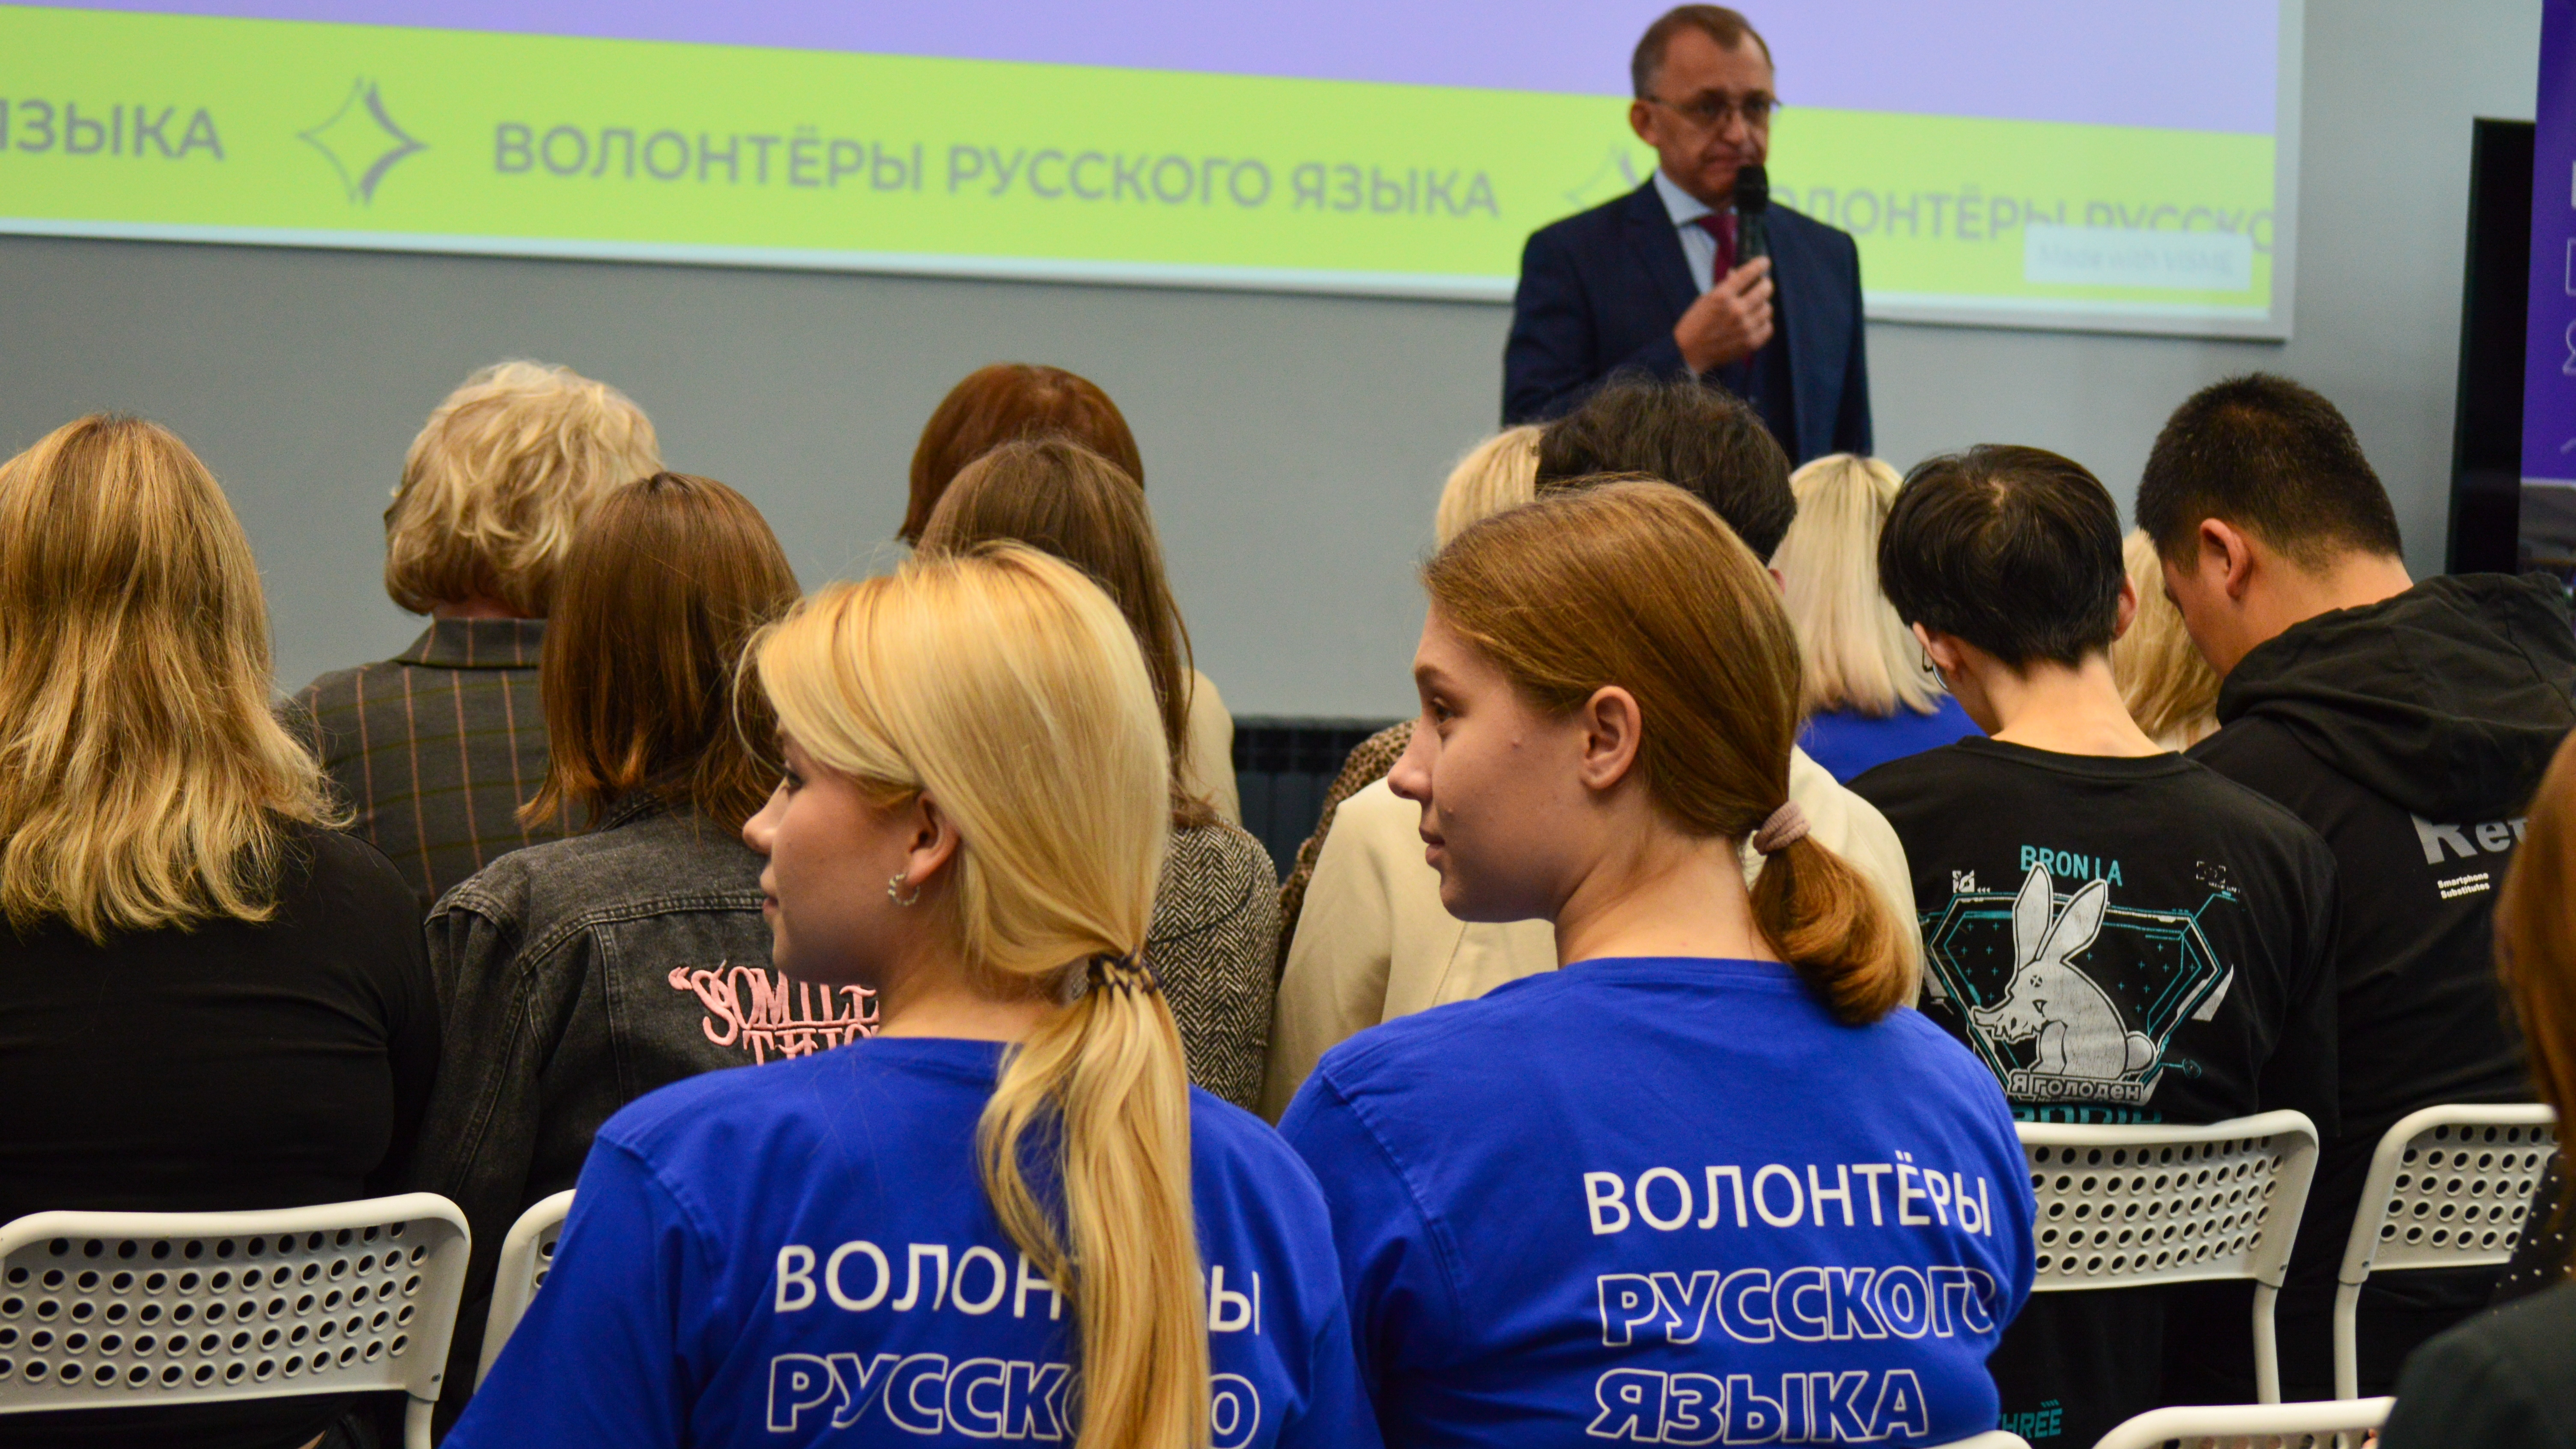 Студенты Державинского открыли наставнический центр «Волонтеры русского языка»  фото анонса